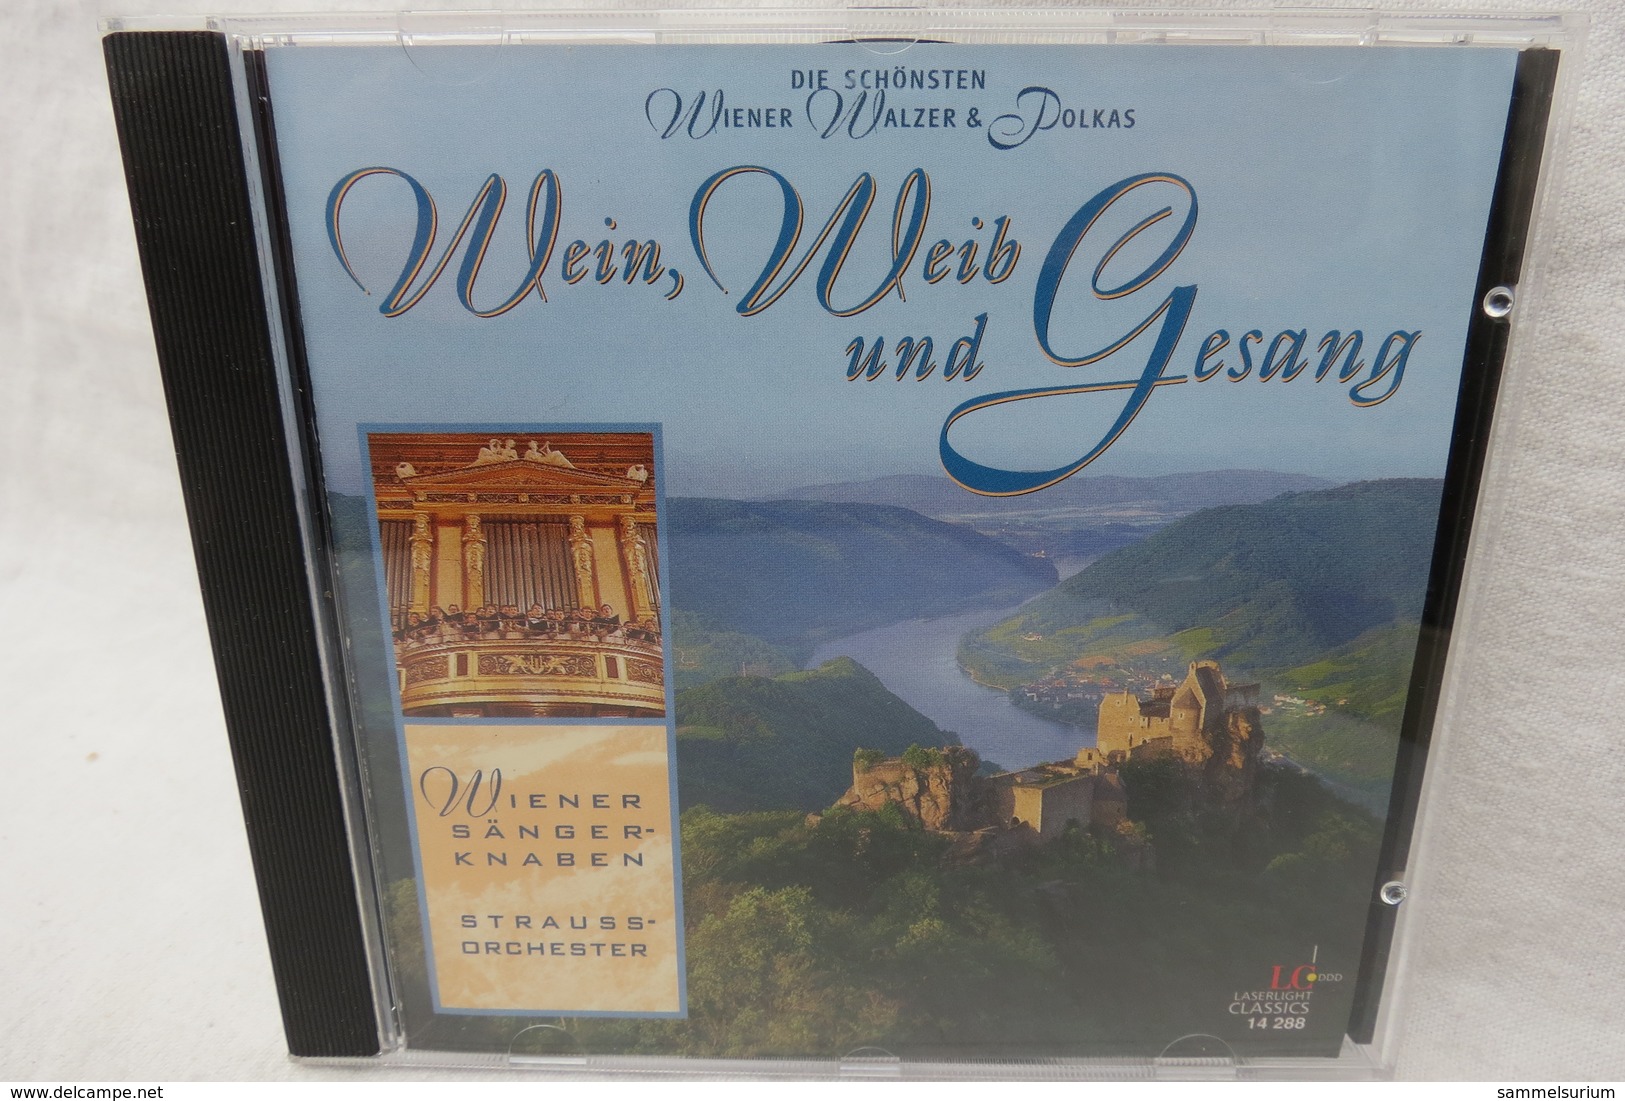 CD "Wiener Sängerknaben / Strauss-Orchester" Wein, Weib Und Gesang, Die Schönsten Wiener Walzer & Polkas - Autres - Musique Allemande